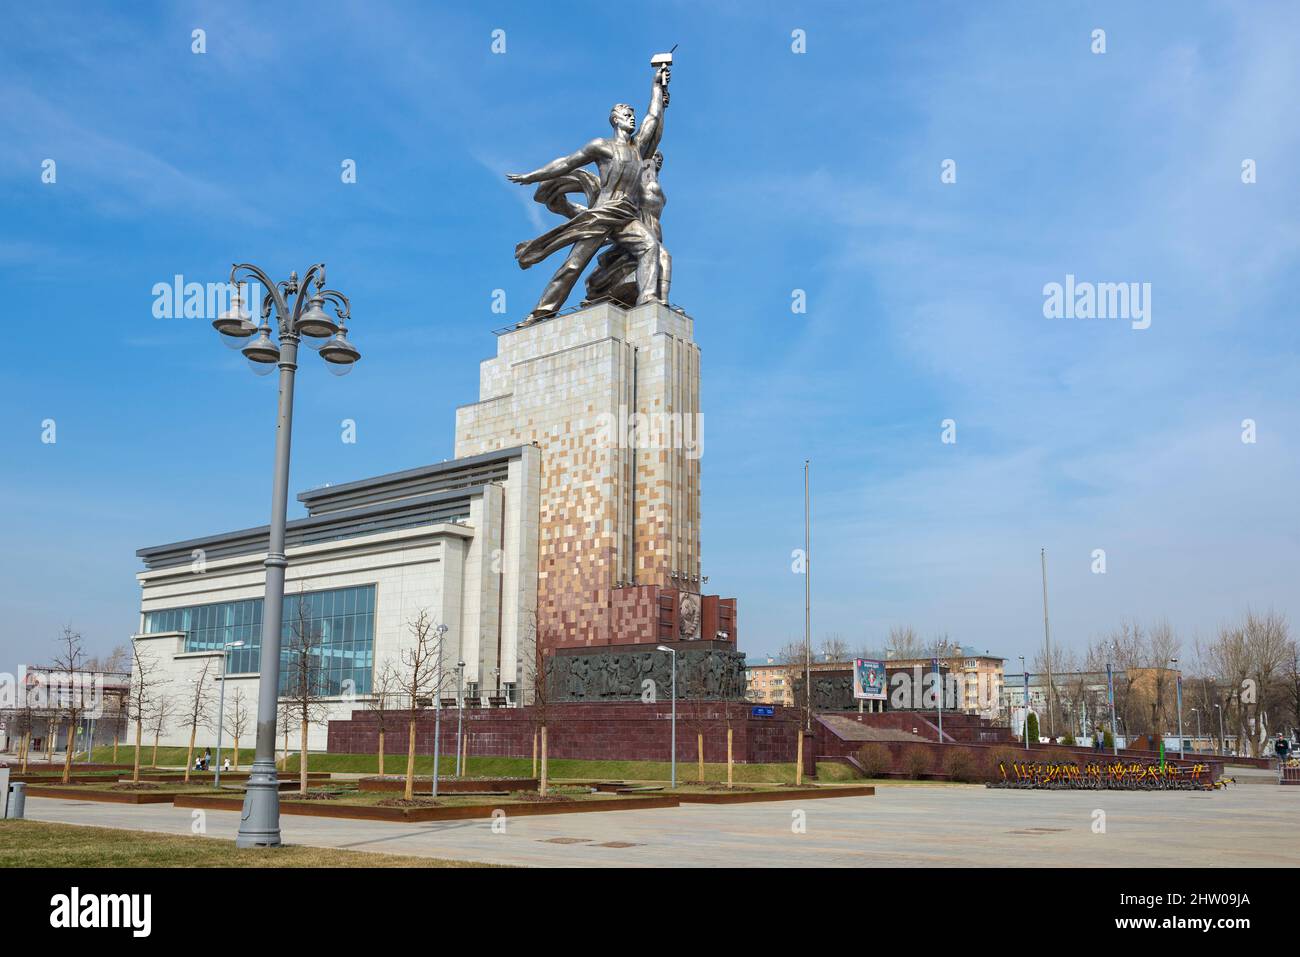 MOSKAU, RUSSLAND - 14. APRIL 2021: Blick auf das berühmte Denkmal "Arbeiter und Kolchosbäuerin" an einem sonnigen Apriltag Stockfoto